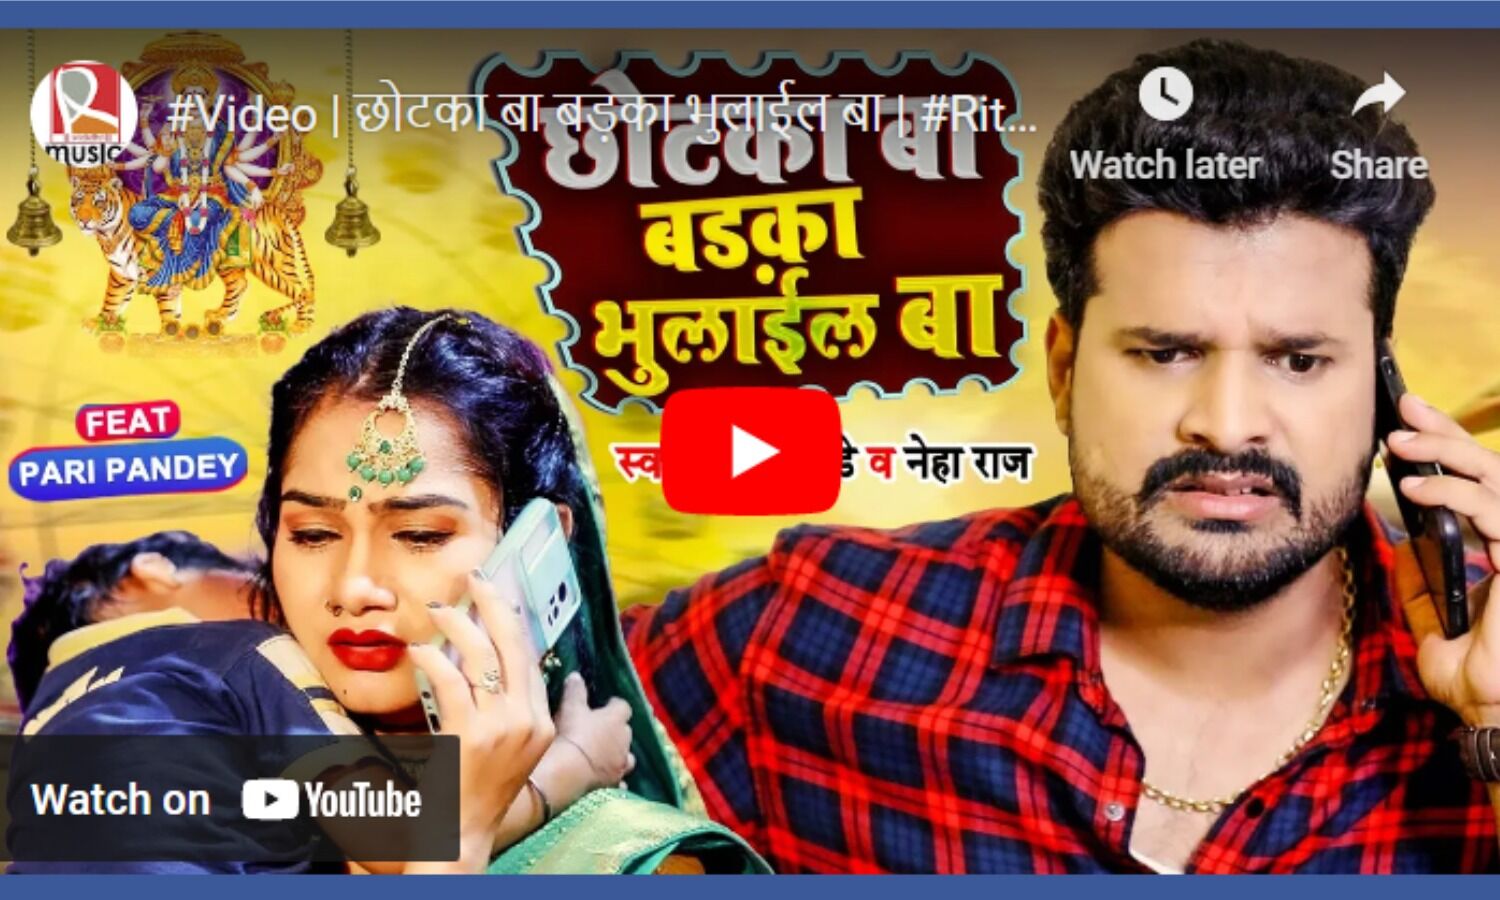 Bhojpuri Video Songs: Ritesh Pandey’s new Bhojpuri song "big boy is lost" went viral